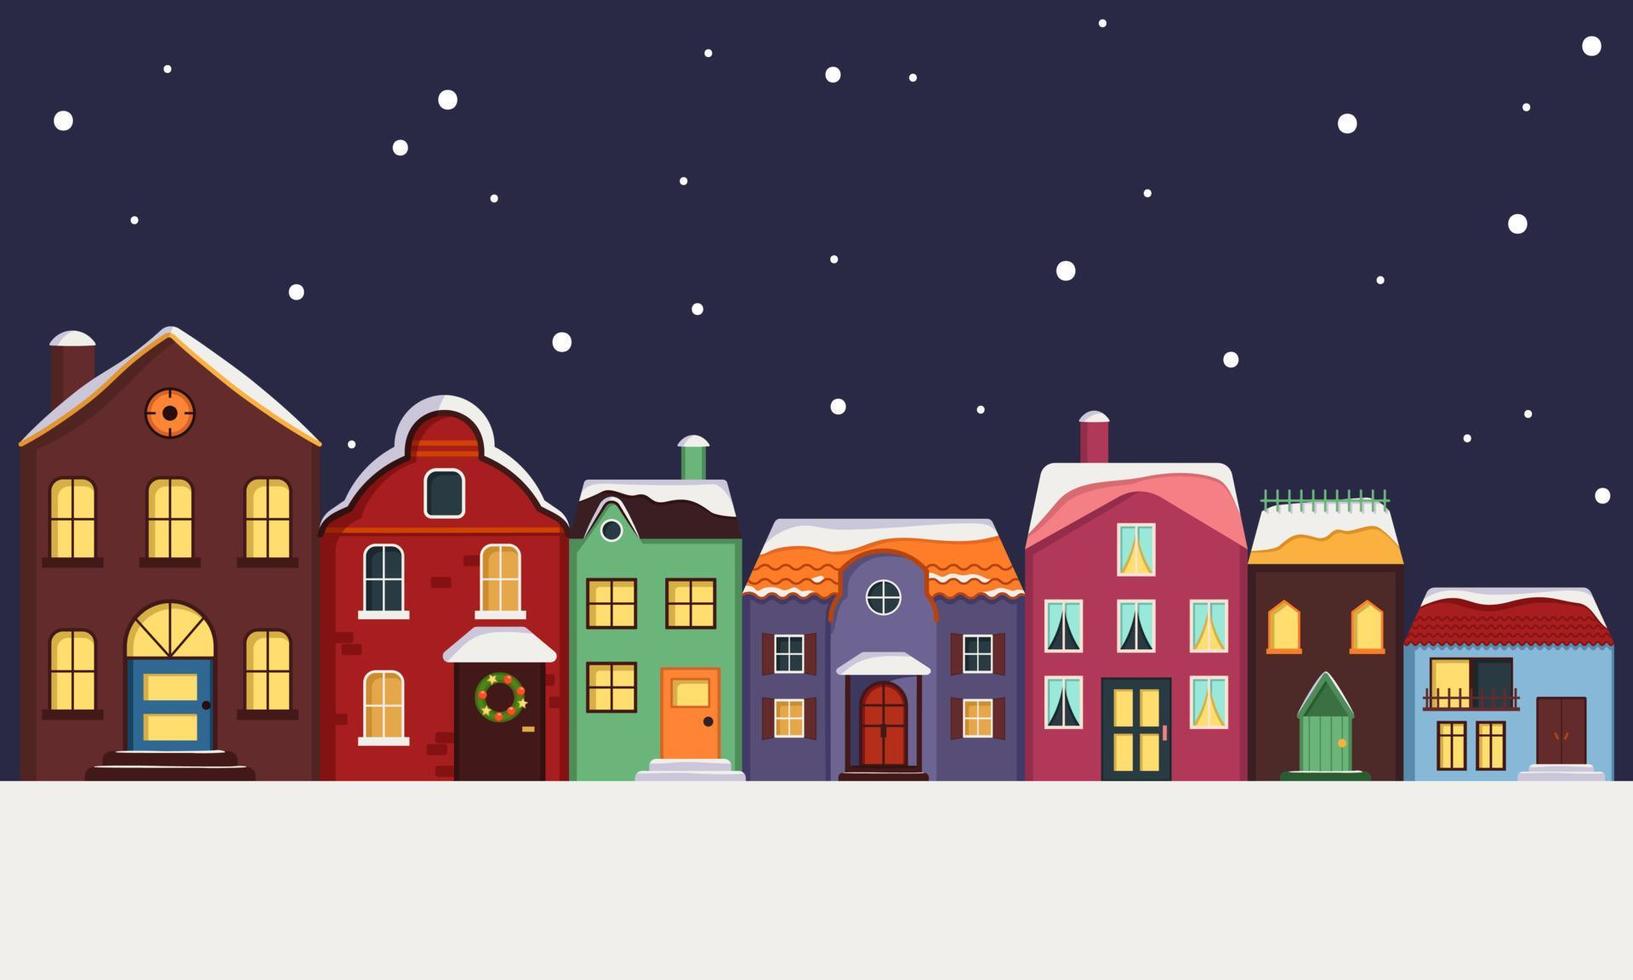 Stadtstraße von hellen bunten Häusern mit schneebedecktem Dach, Licht in den Fenstern und Schneeflocken im Hintergrund. fröhliche feiertagsdekorationen für neujahr und weihnachten. Winter und festliche Elemente vektor